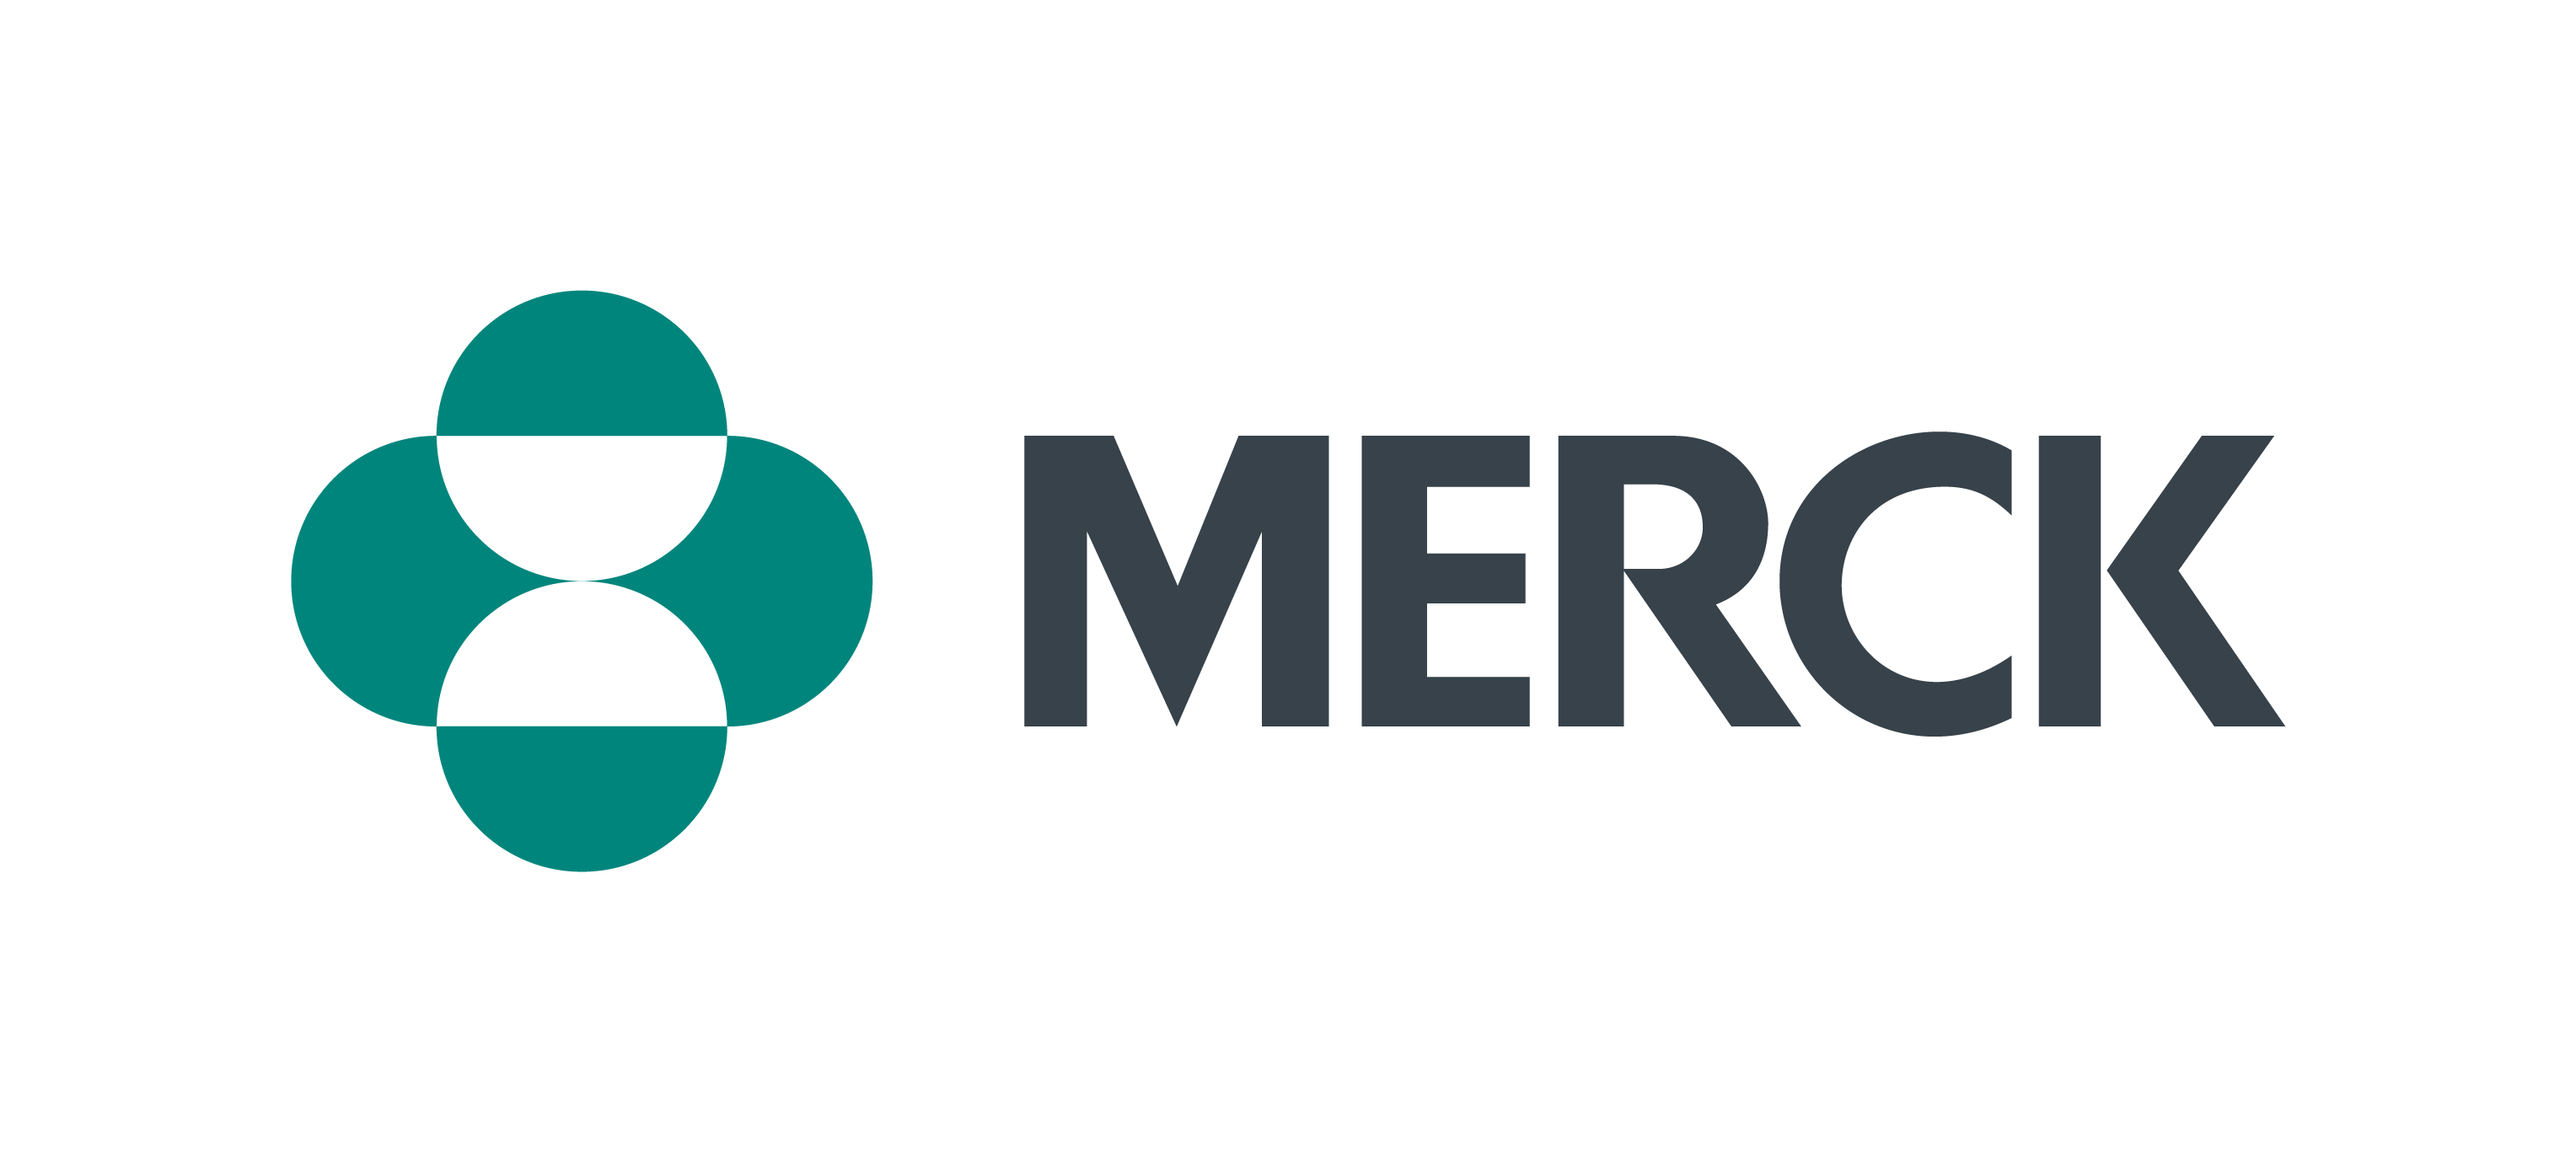 02852_Merck_Logo_Horizontal_Teal&Grey_RGB